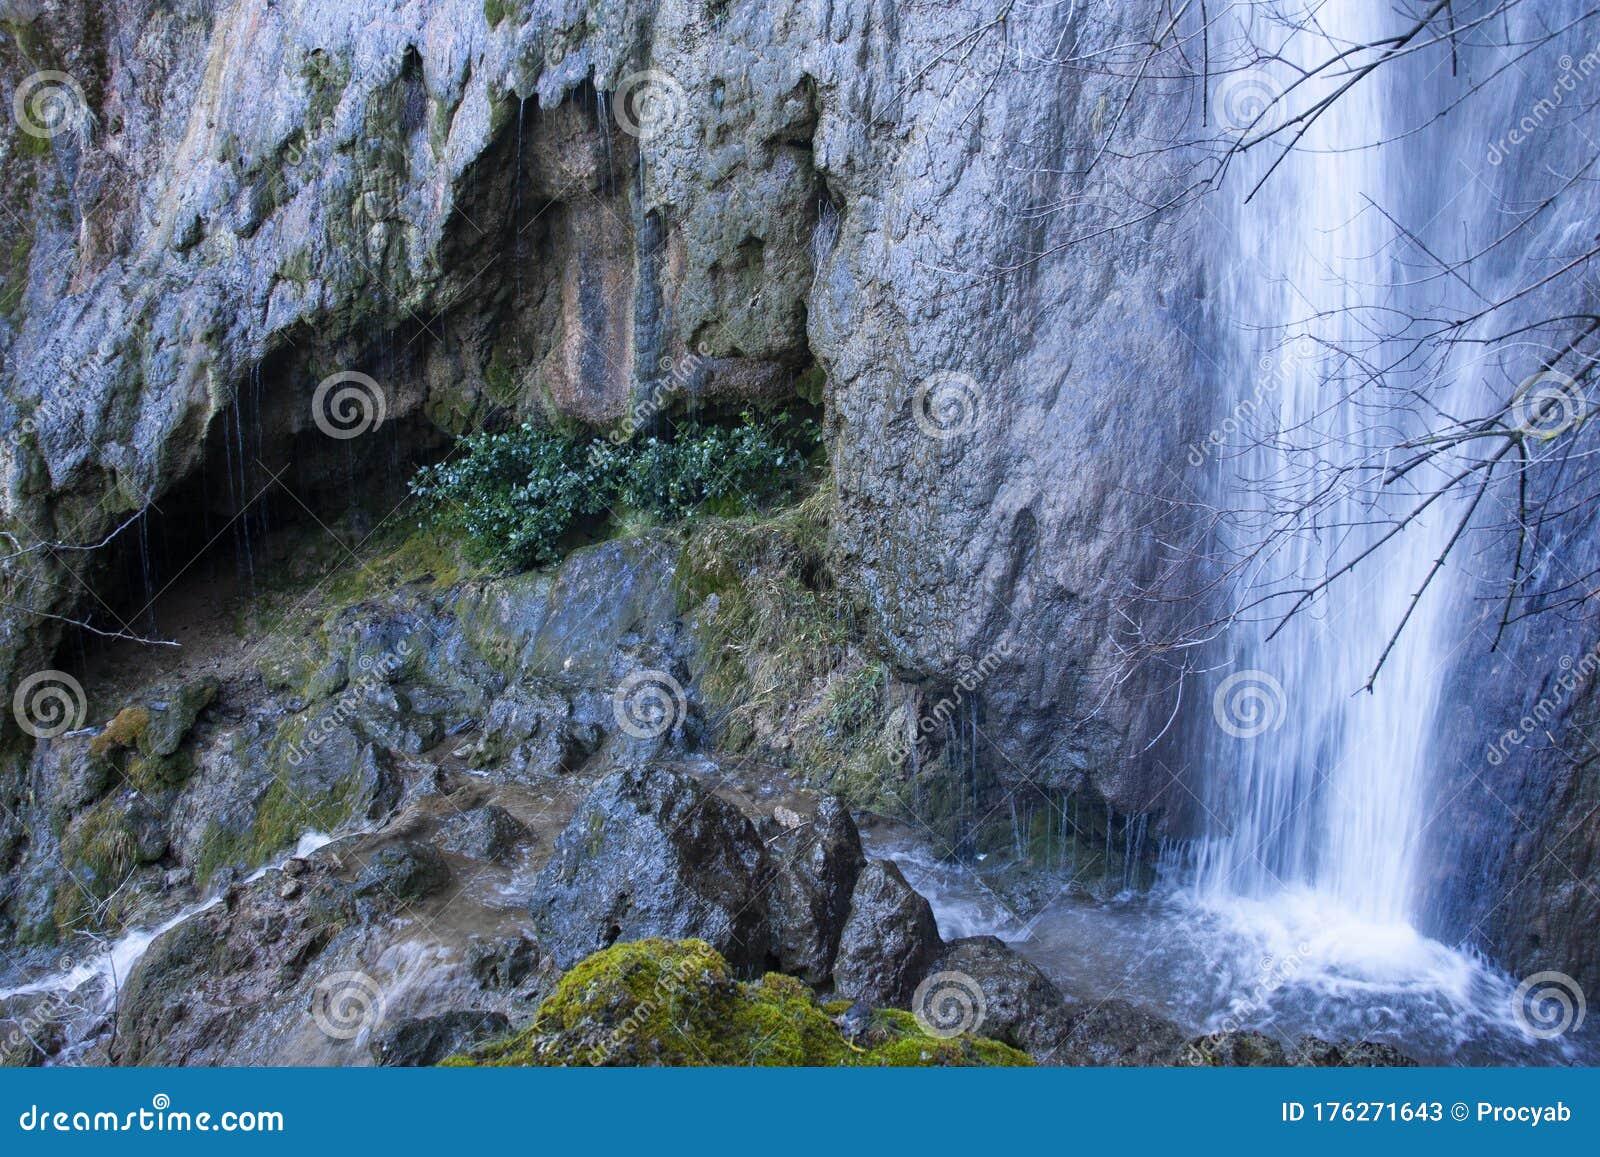 paterna del madera waterfall